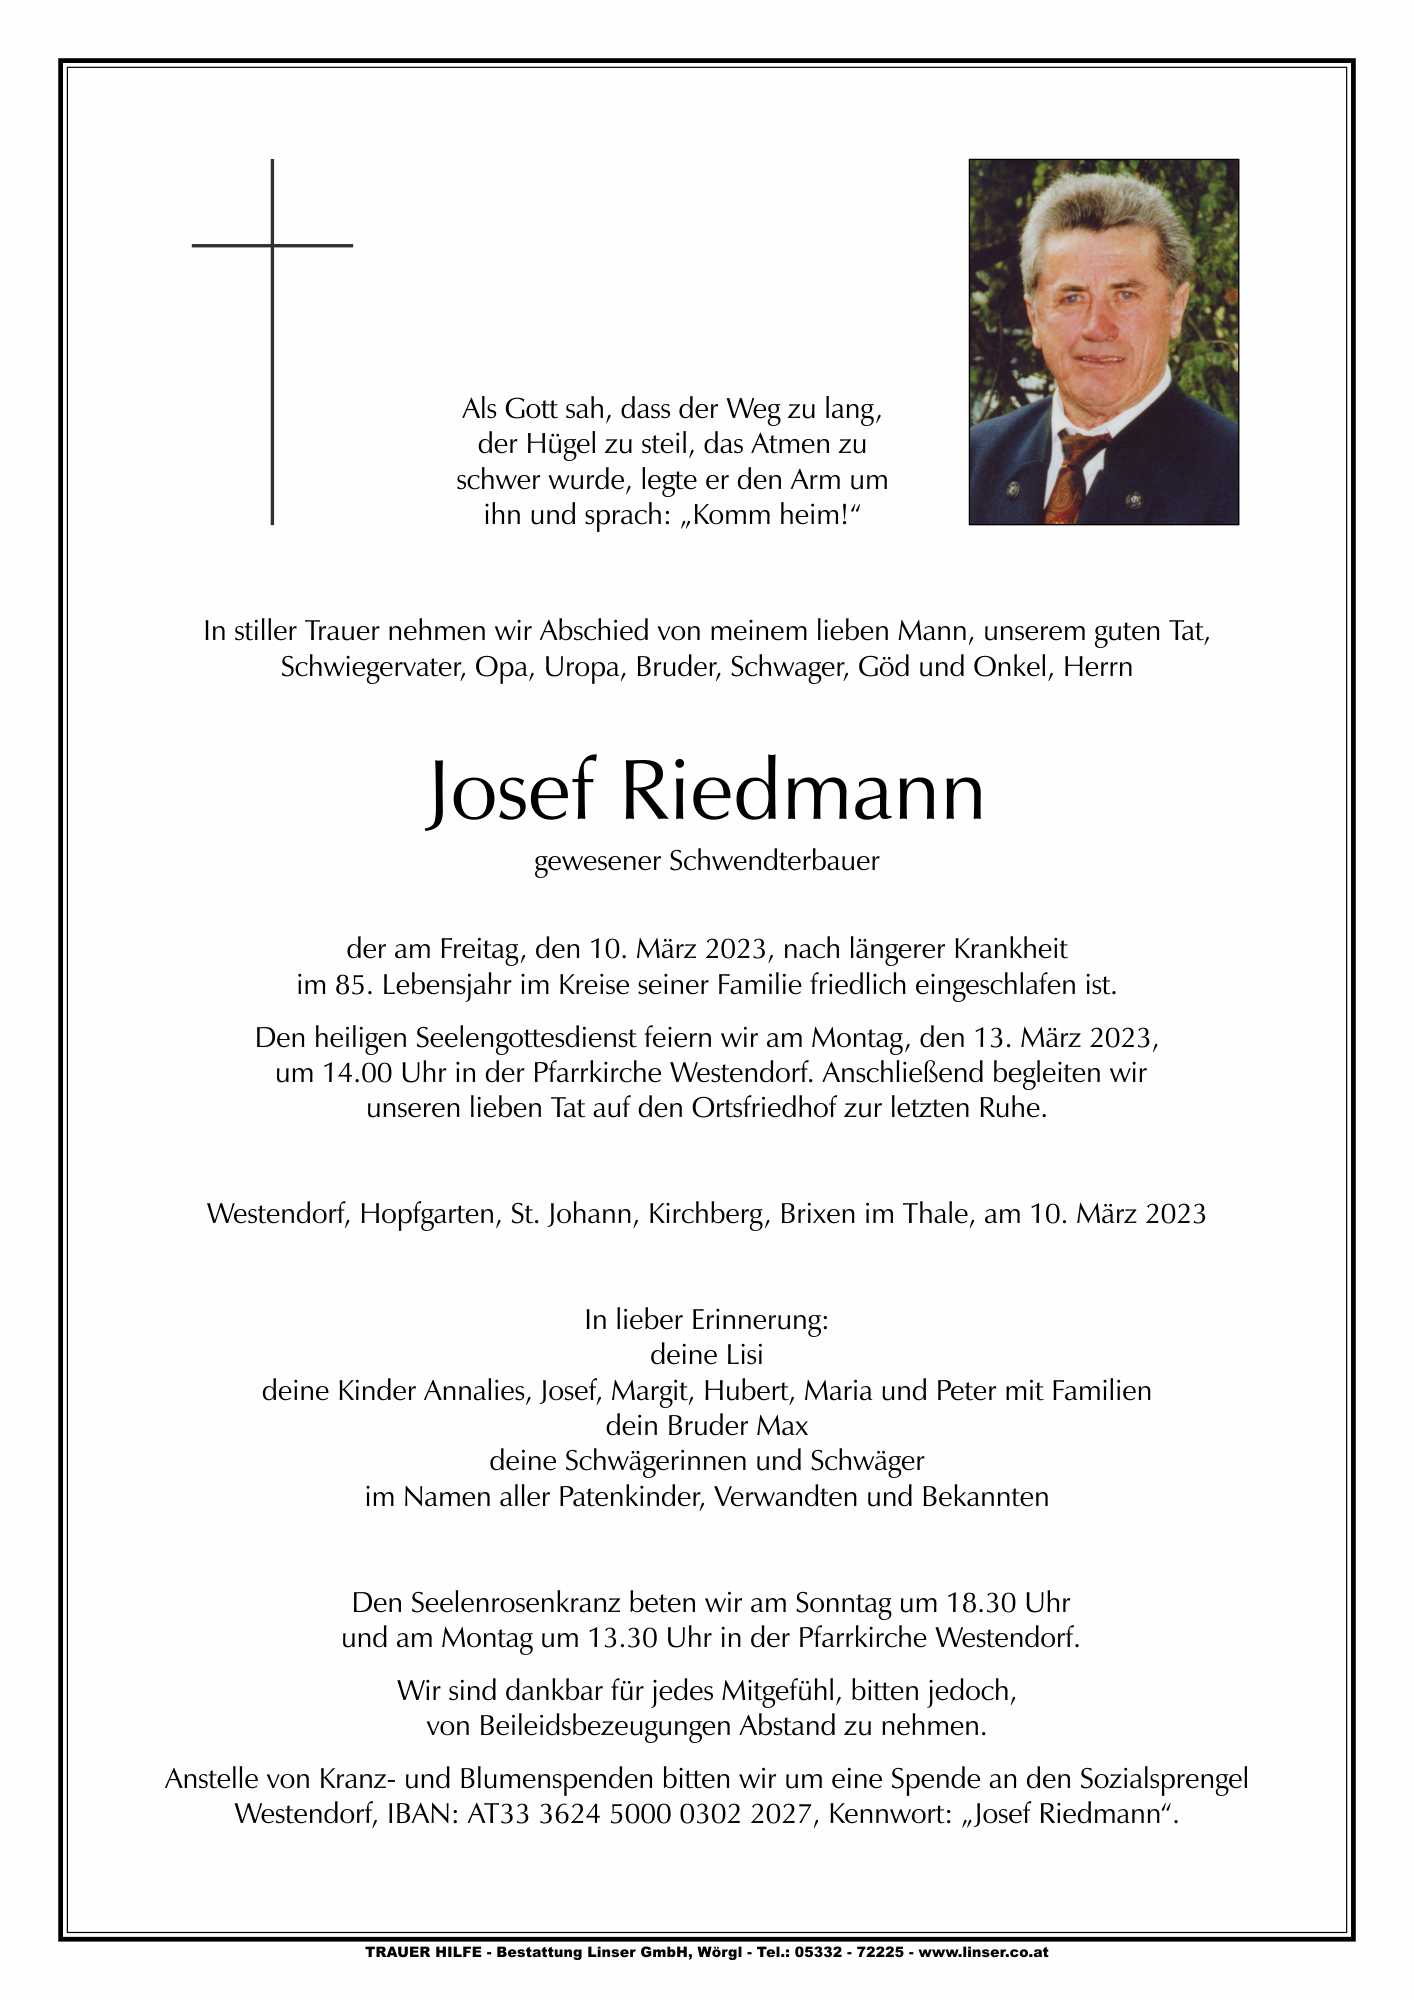 Josef Riedmann